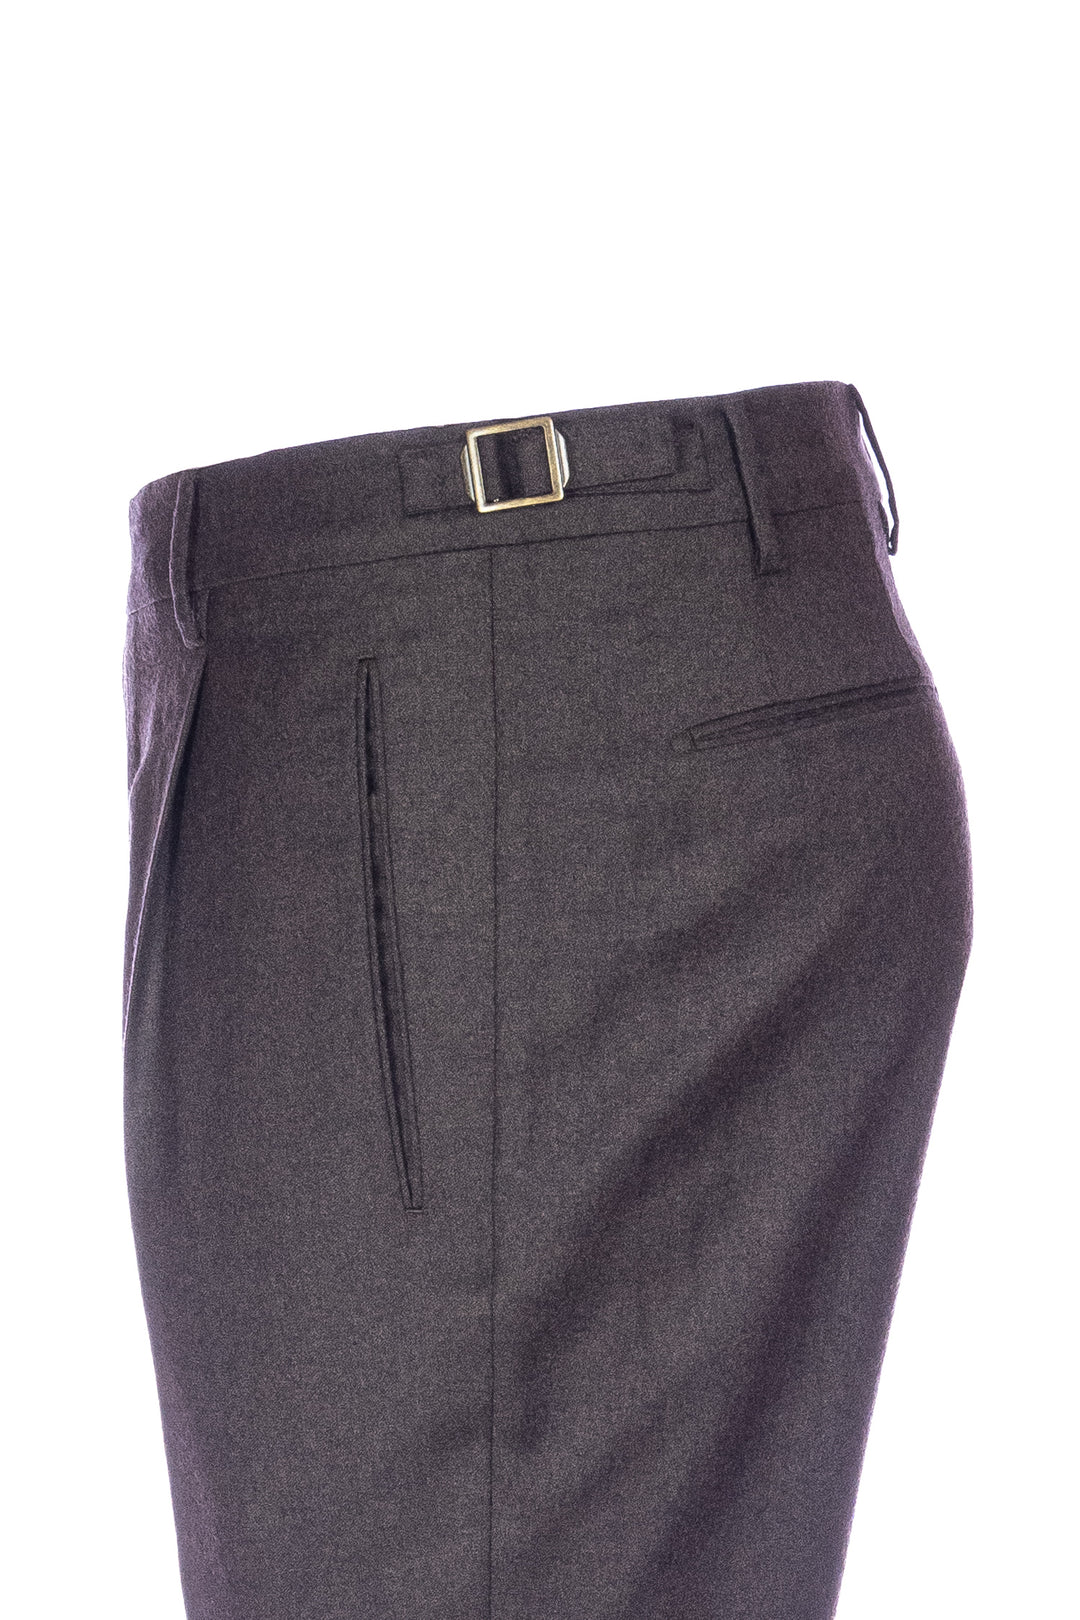 BERWICH Pantalone retro marrone in lana vergine stretch con una pince - Mancinelli 1954